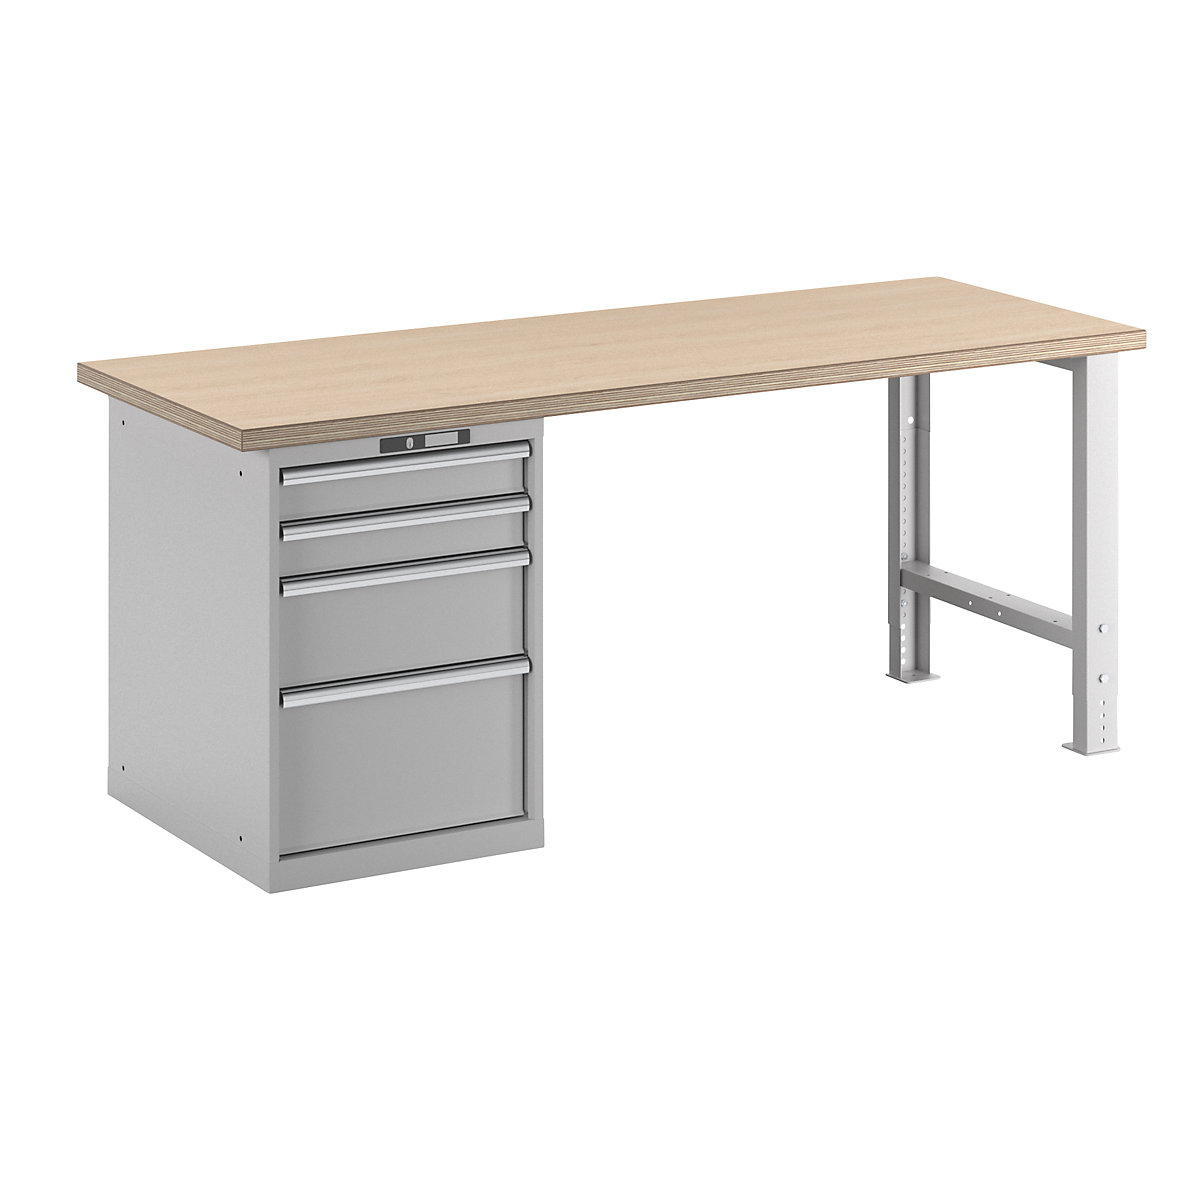 Stół warsztatowy w systemie modułowym – LISTA, wys. 840 mm, szafka dolna, 4 szuflady, jasnoszary, szer. stołu 2000 mm-16